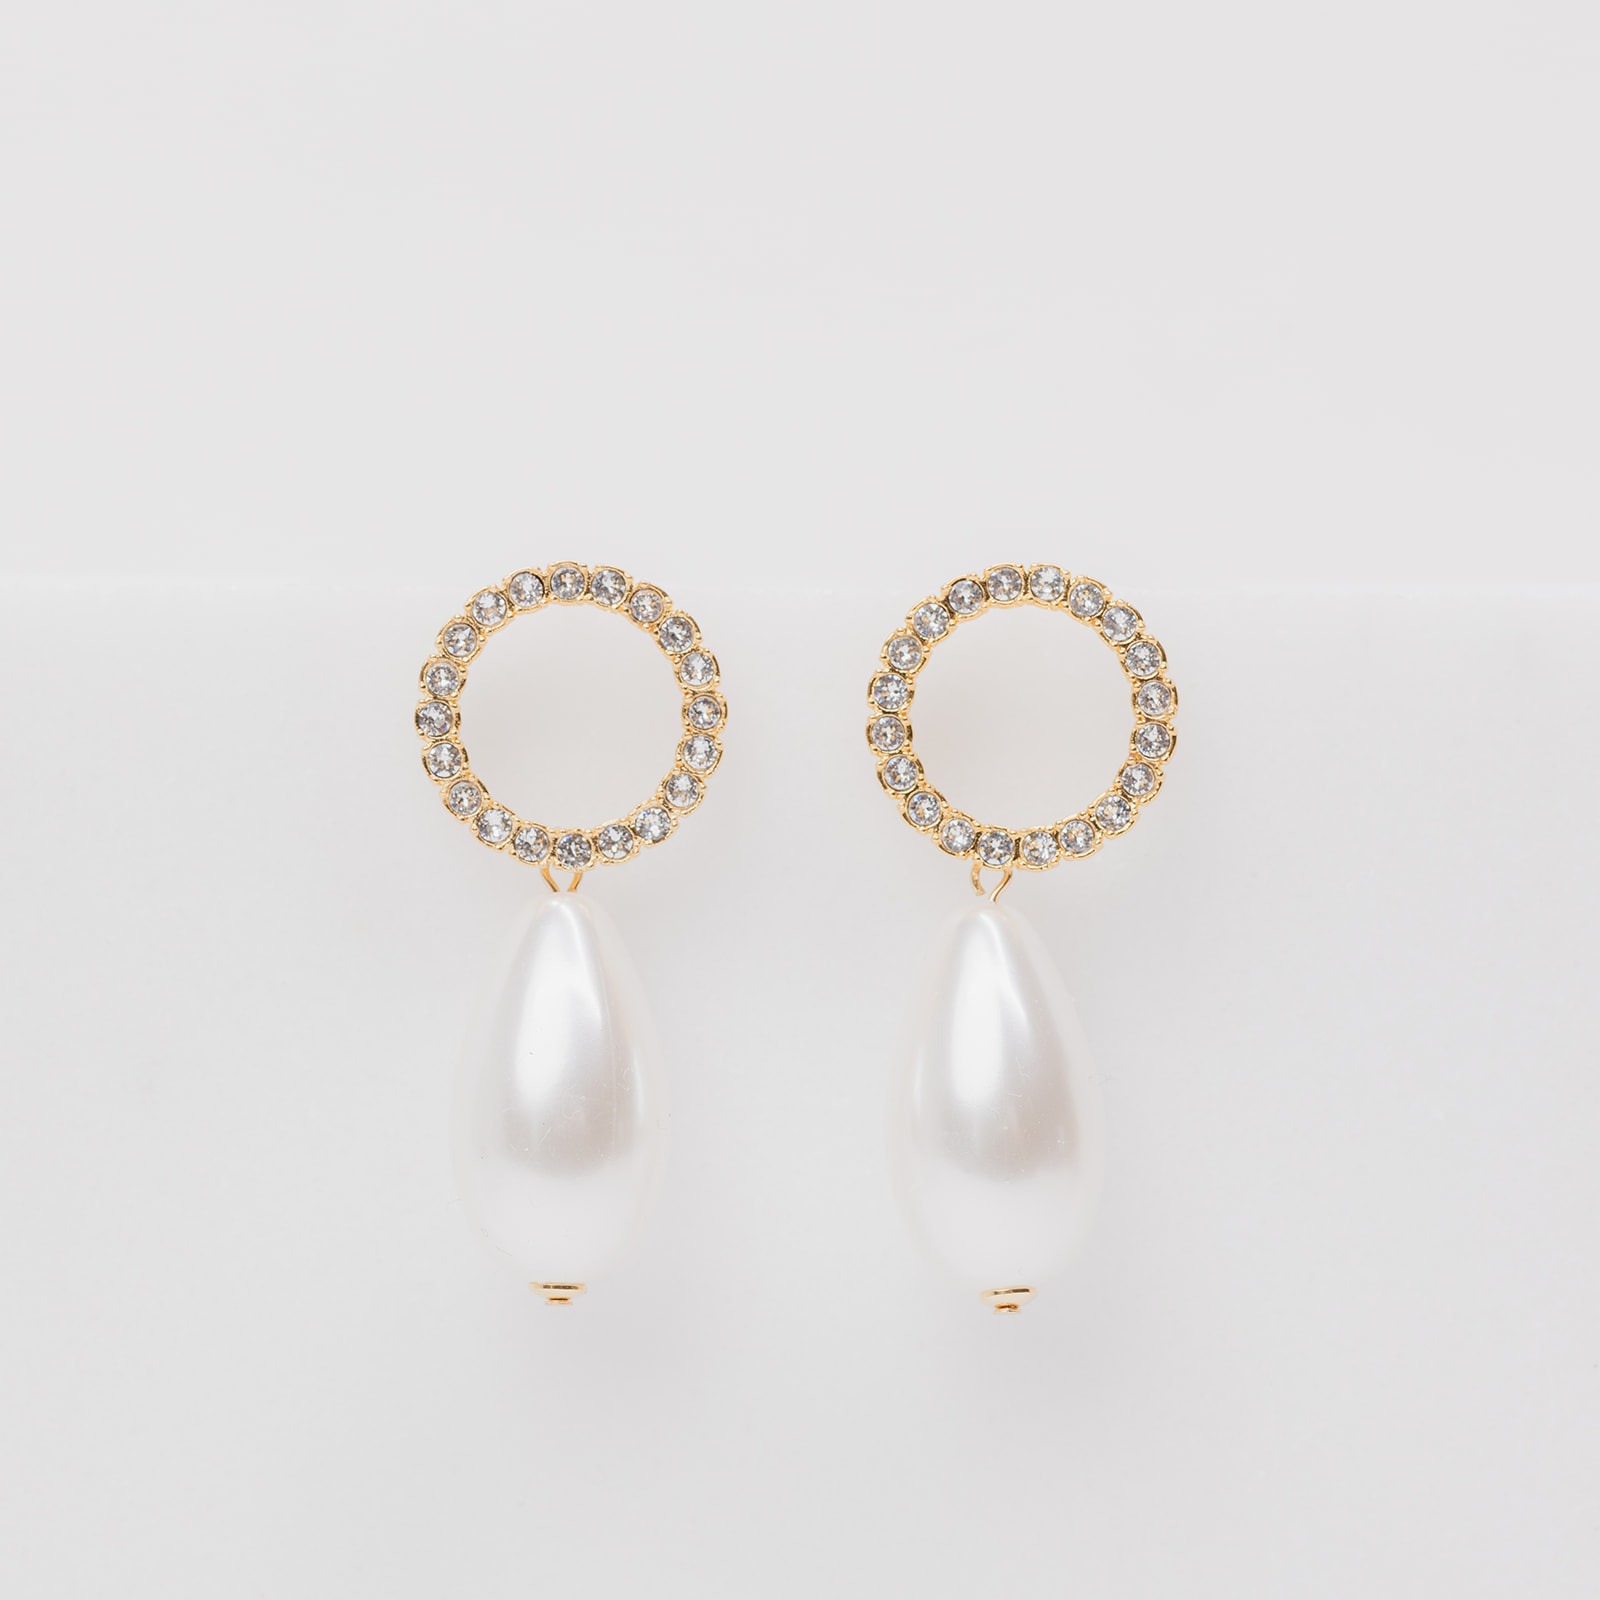 Riley bridal earrings